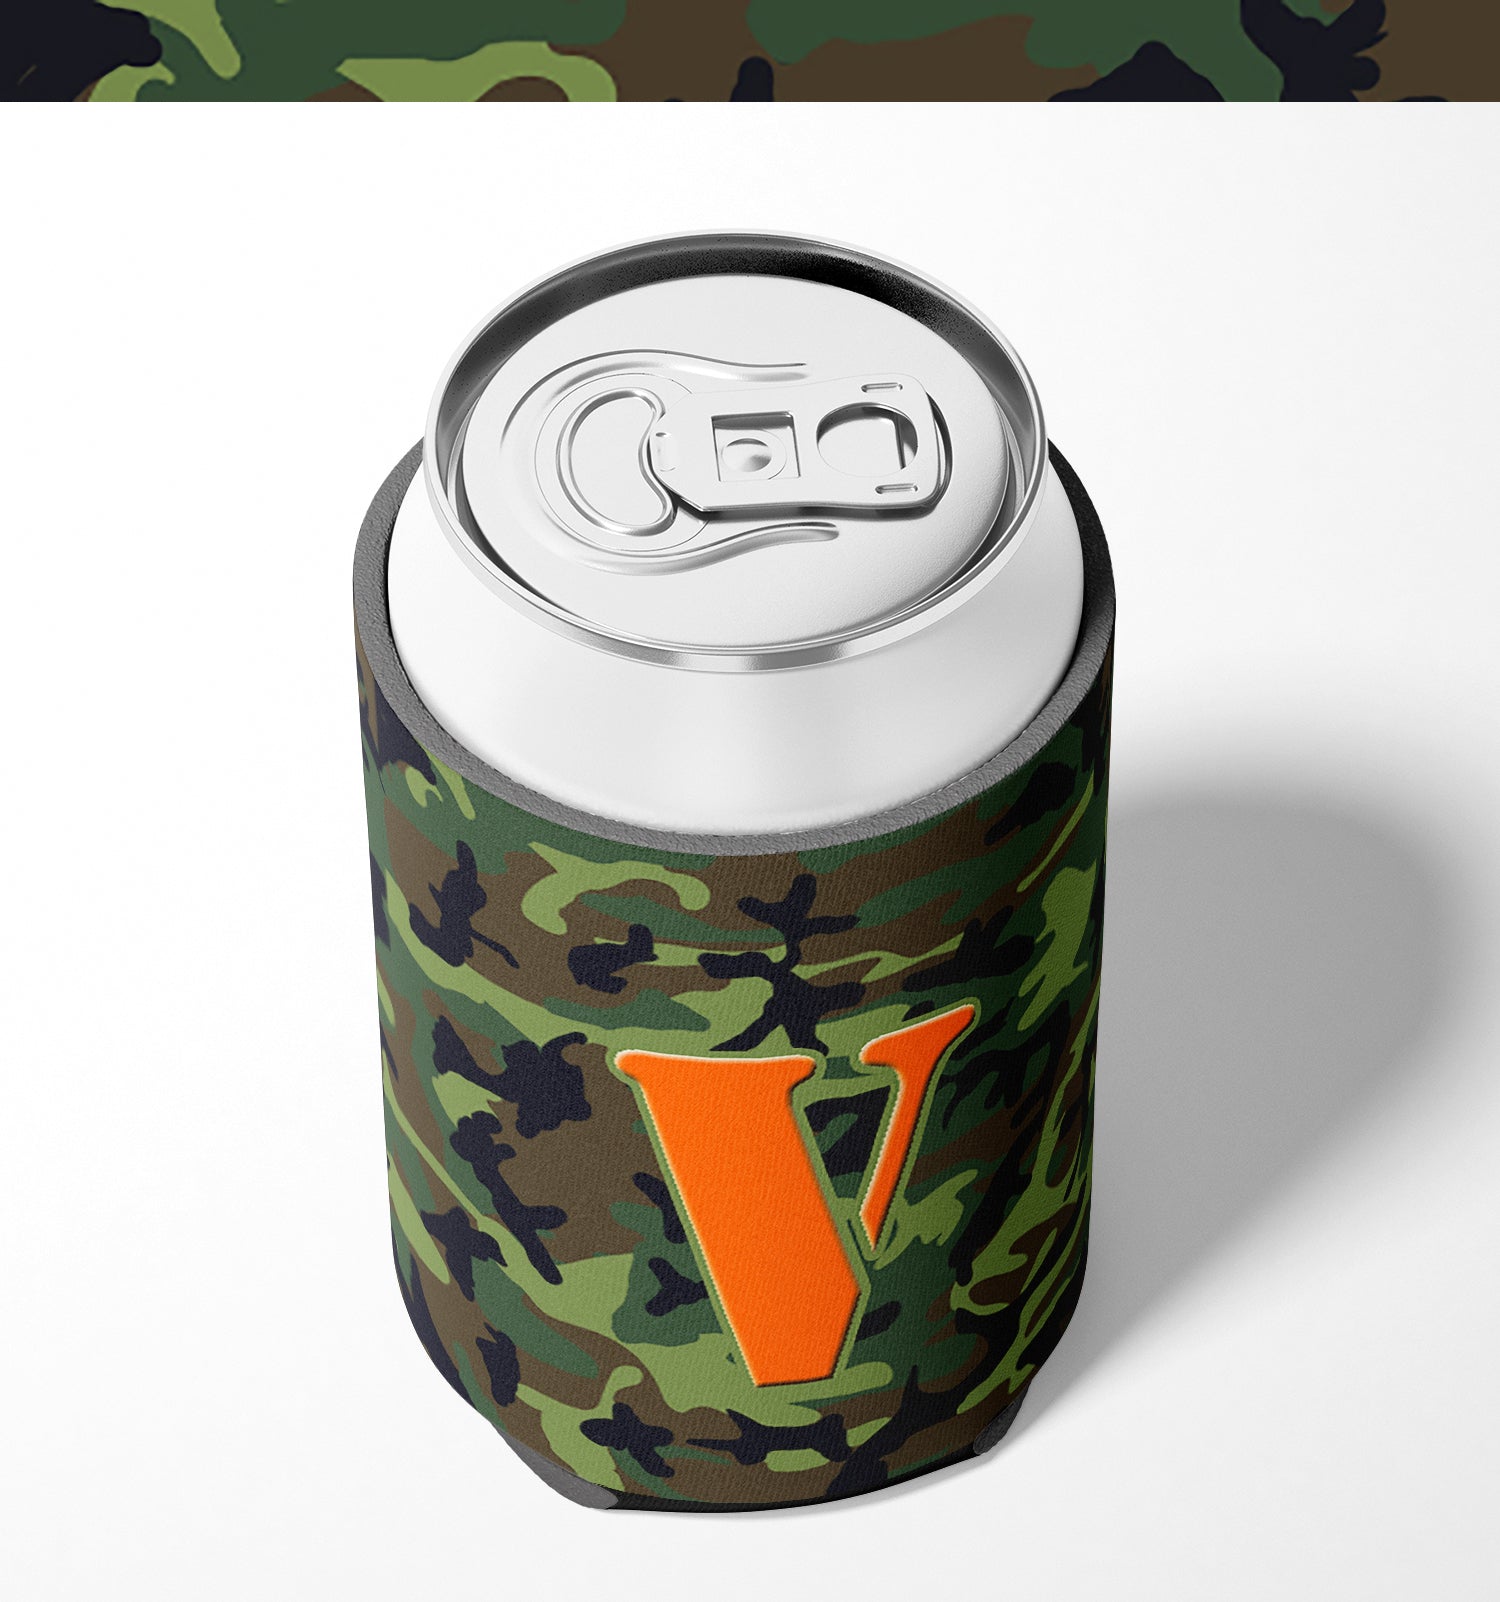 Letter V Initial Monogram - Camo Green Can or Bottle Beverage Insulator Hugger.